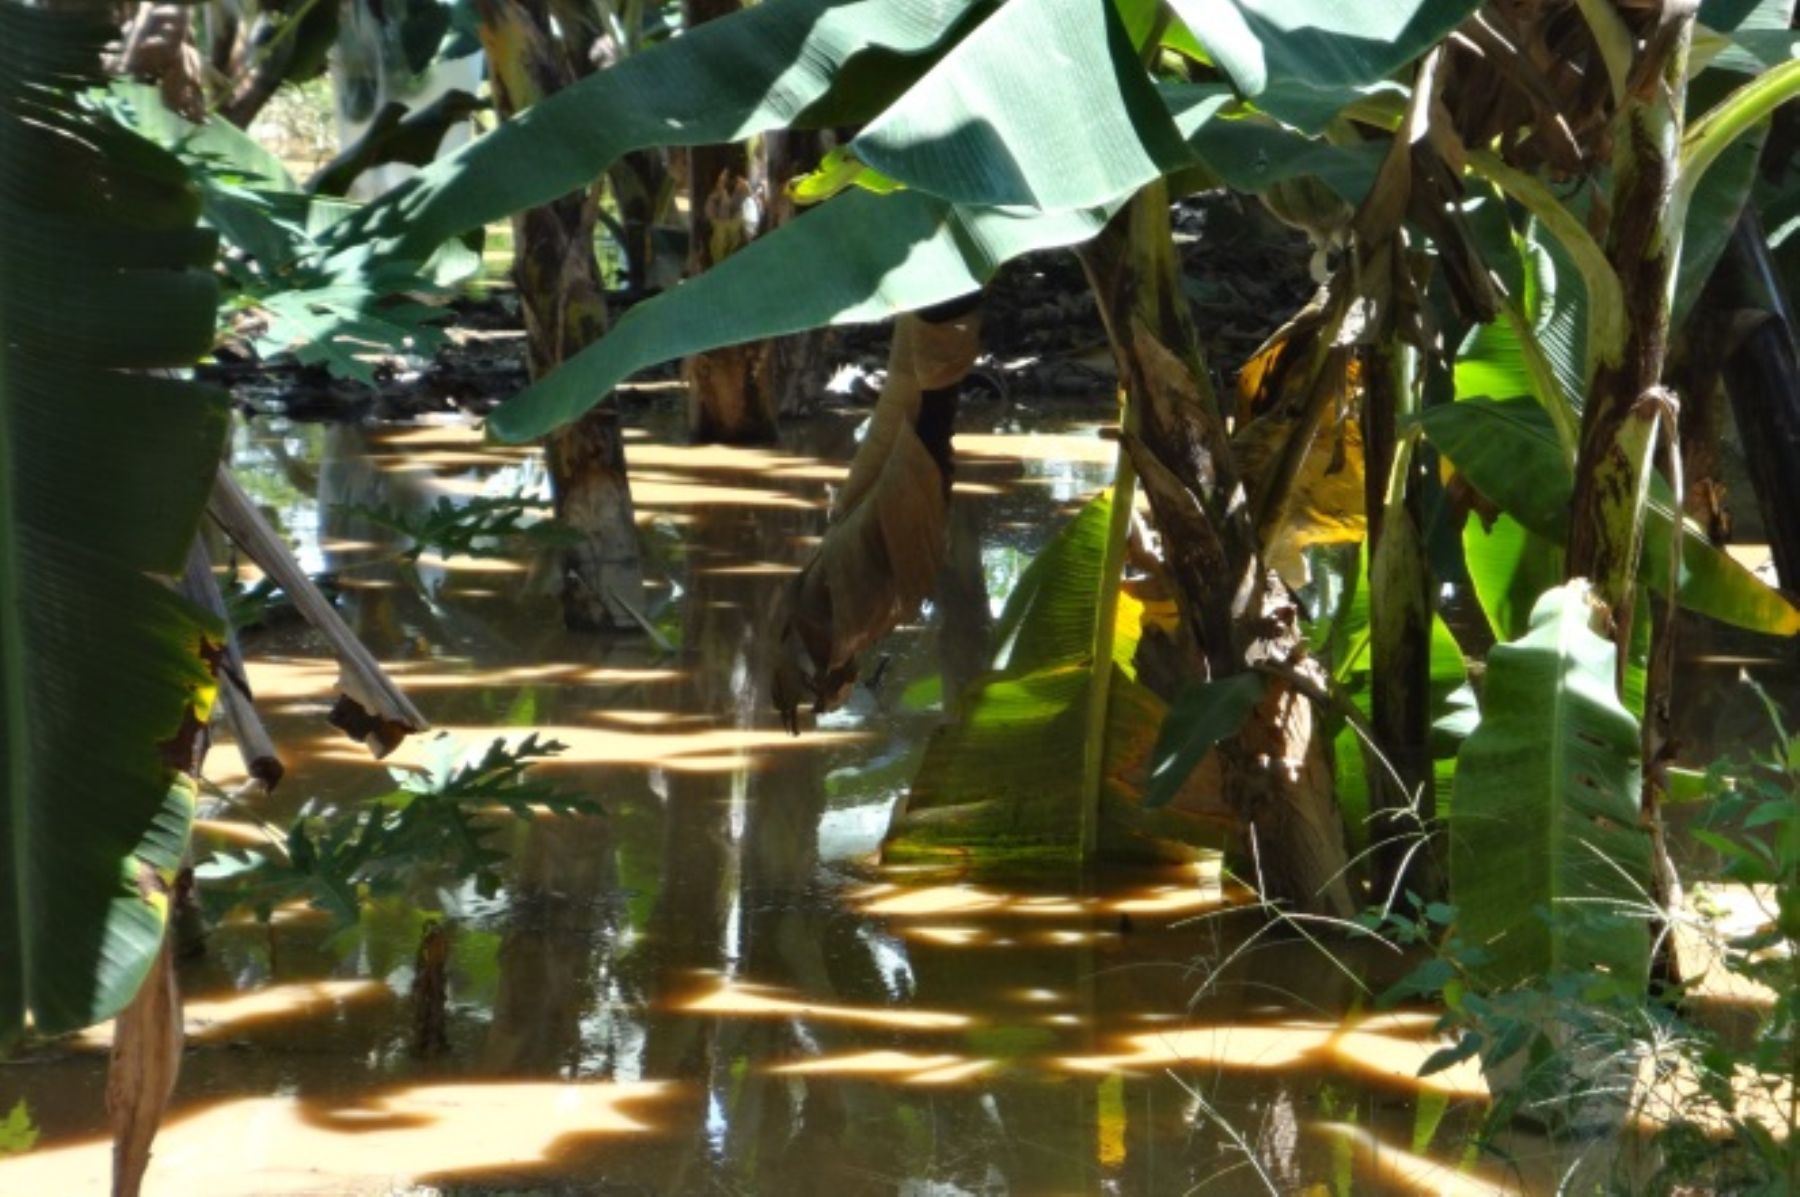 Cultivos de banano orgánico fueron afectados por el desborde del río Tumbes, causando pérdidas a los agricultores. ANDINA/archivo